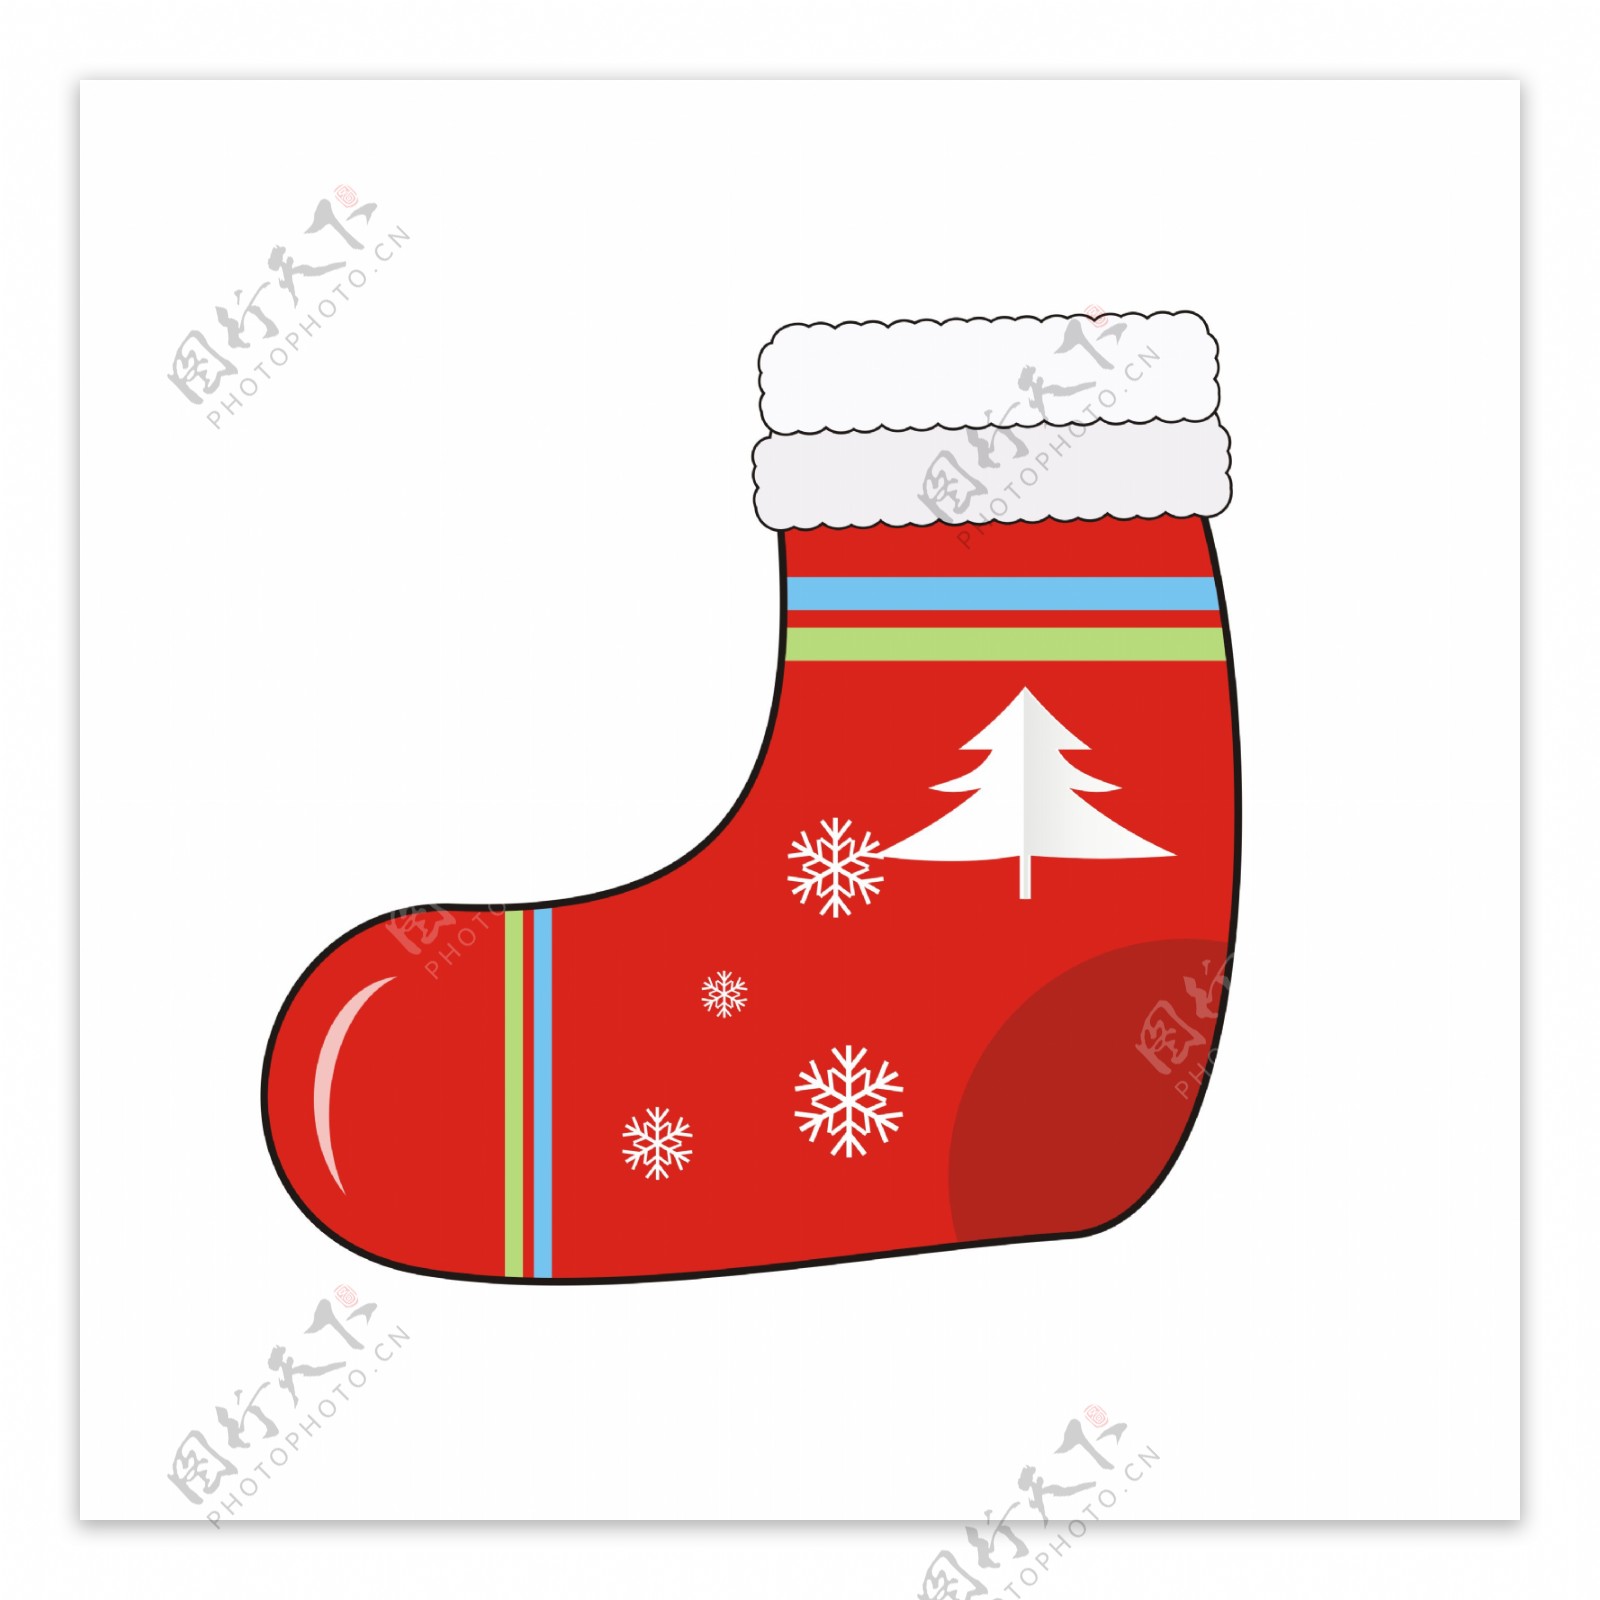 圣诞元素卡通可爱冬季保暖的红色袜子